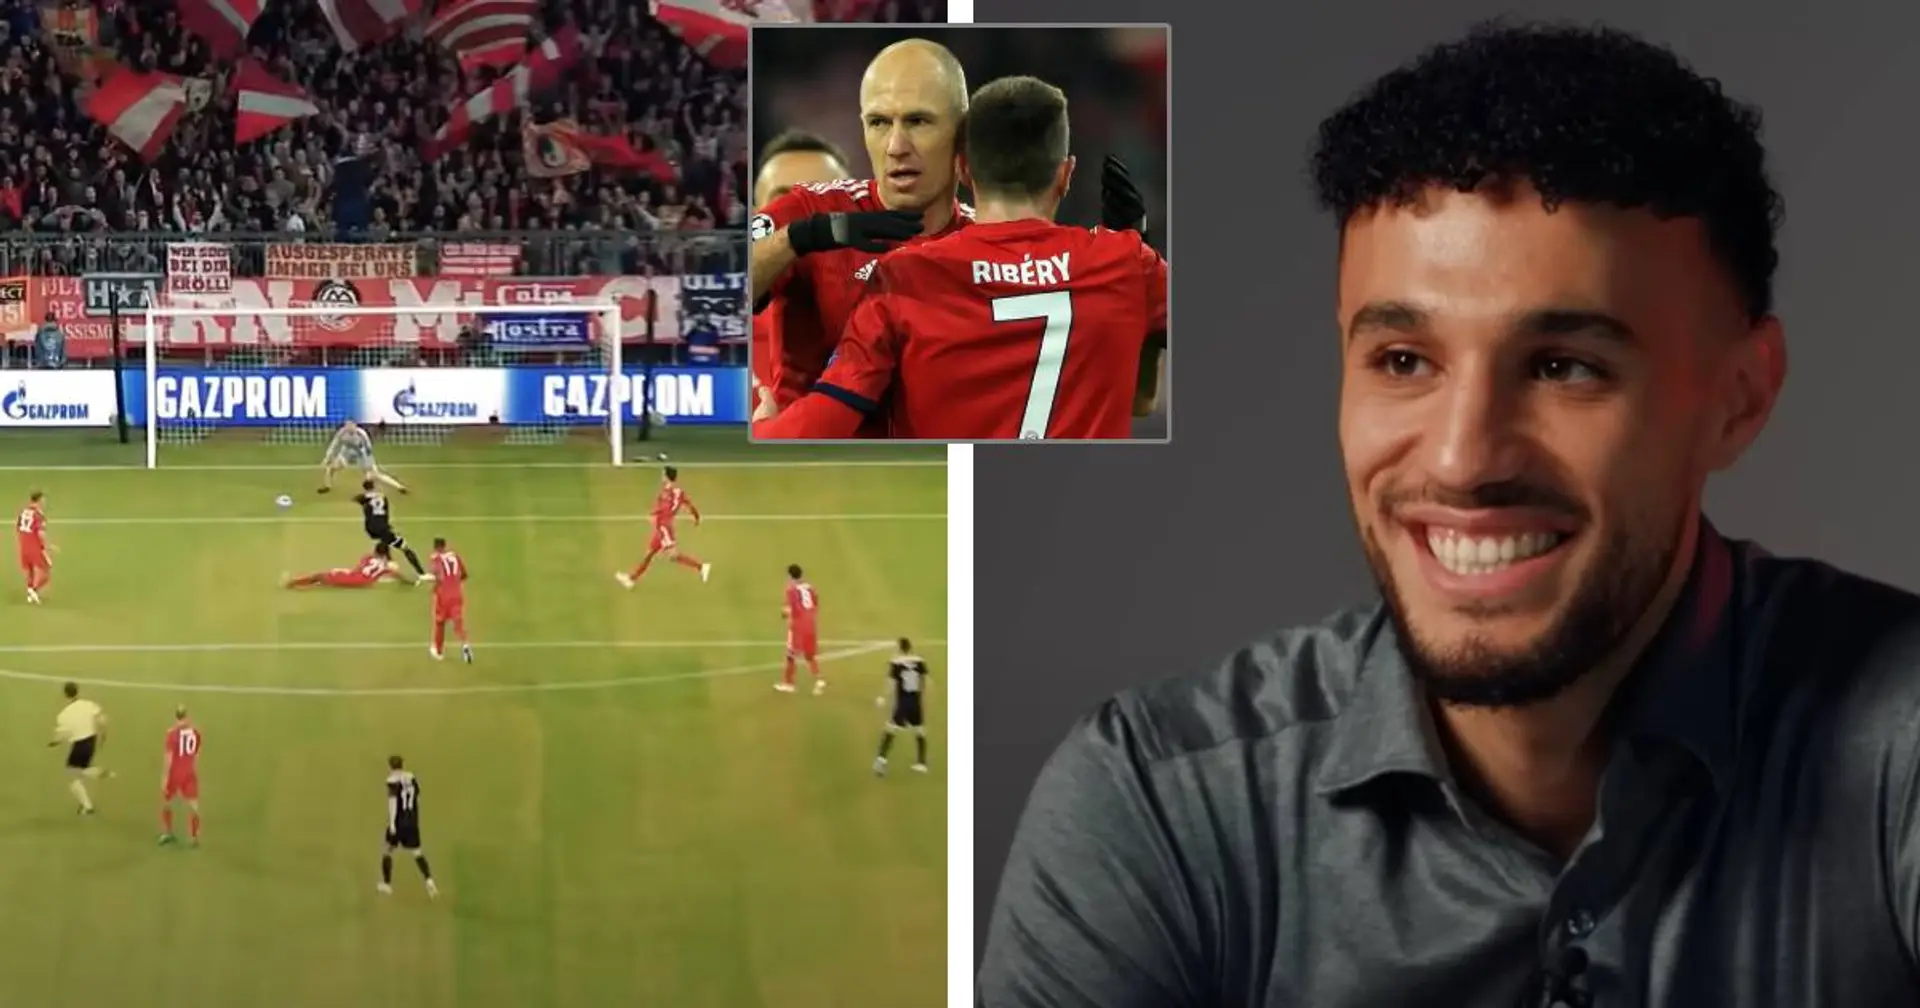 Duelle gegen Robben und Ribery, erstes UCL-Tor: Mazraoui hat besondere Erinnerungen an sein Spiel in München im Jahr 2018